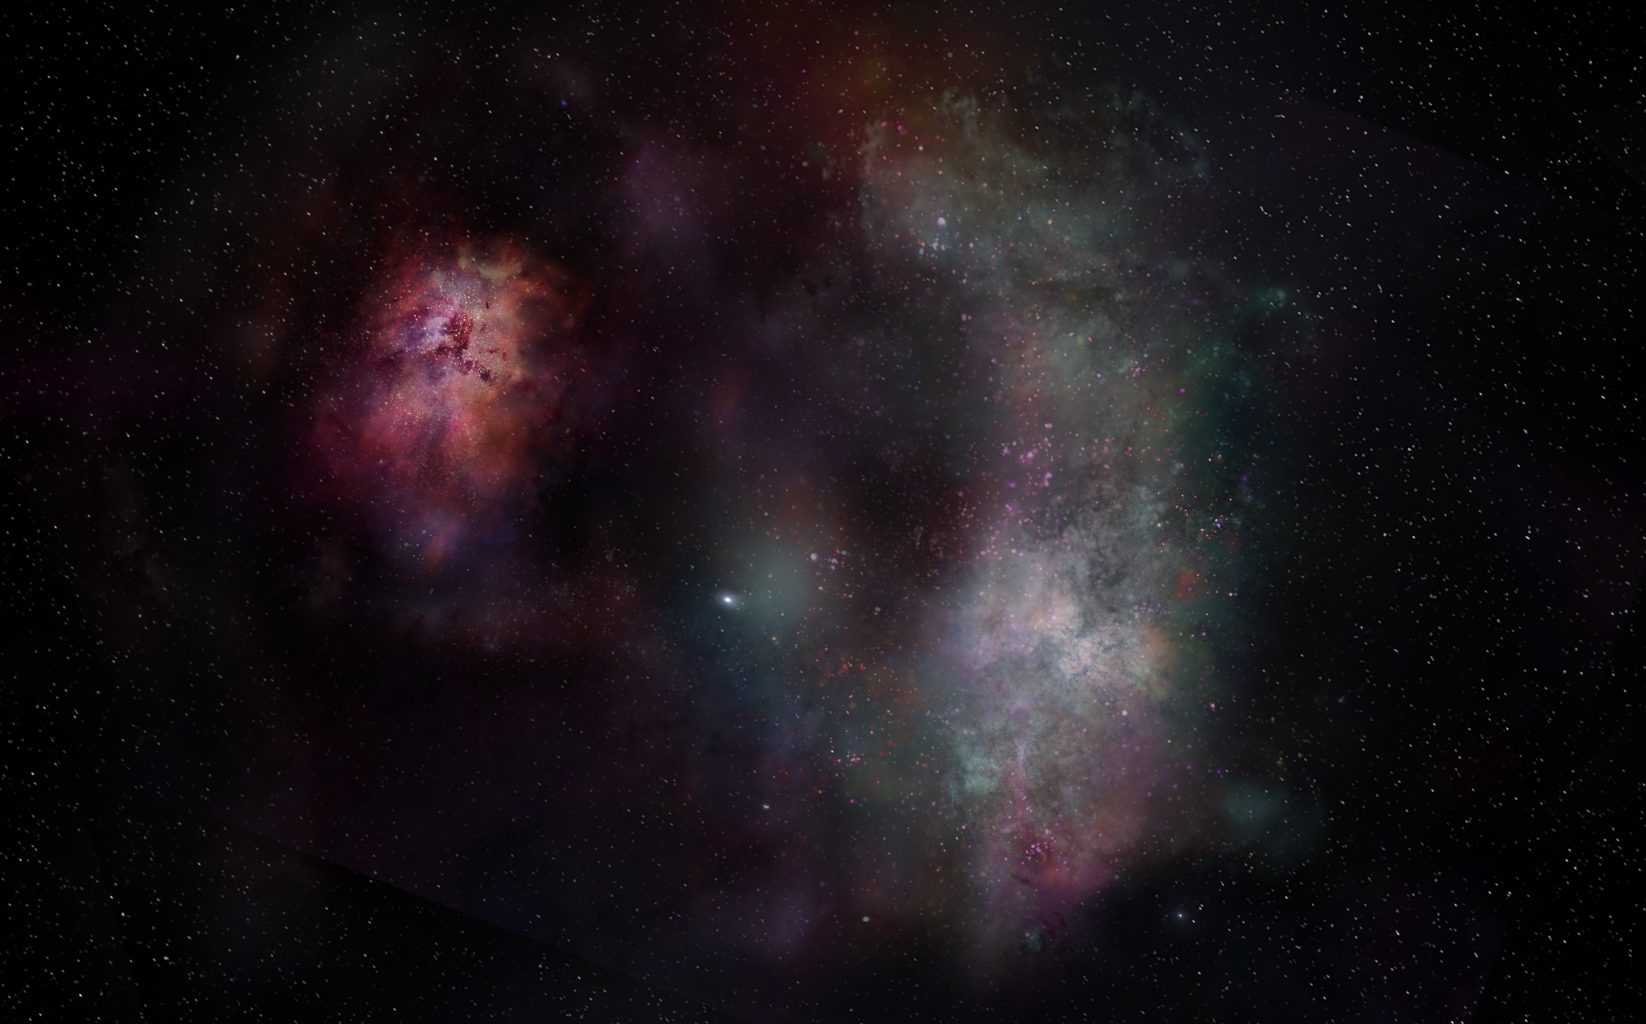 Художественный портрет пылевого континуума и молекулярных линий воды и углерода в галактиках SPT0311-58. Наблюдения с ALMA показали изобилие молекул. Предоставлено: АЛМА (ESO / NAOJ / NRAO) / S. Дагнелло (НРАО)